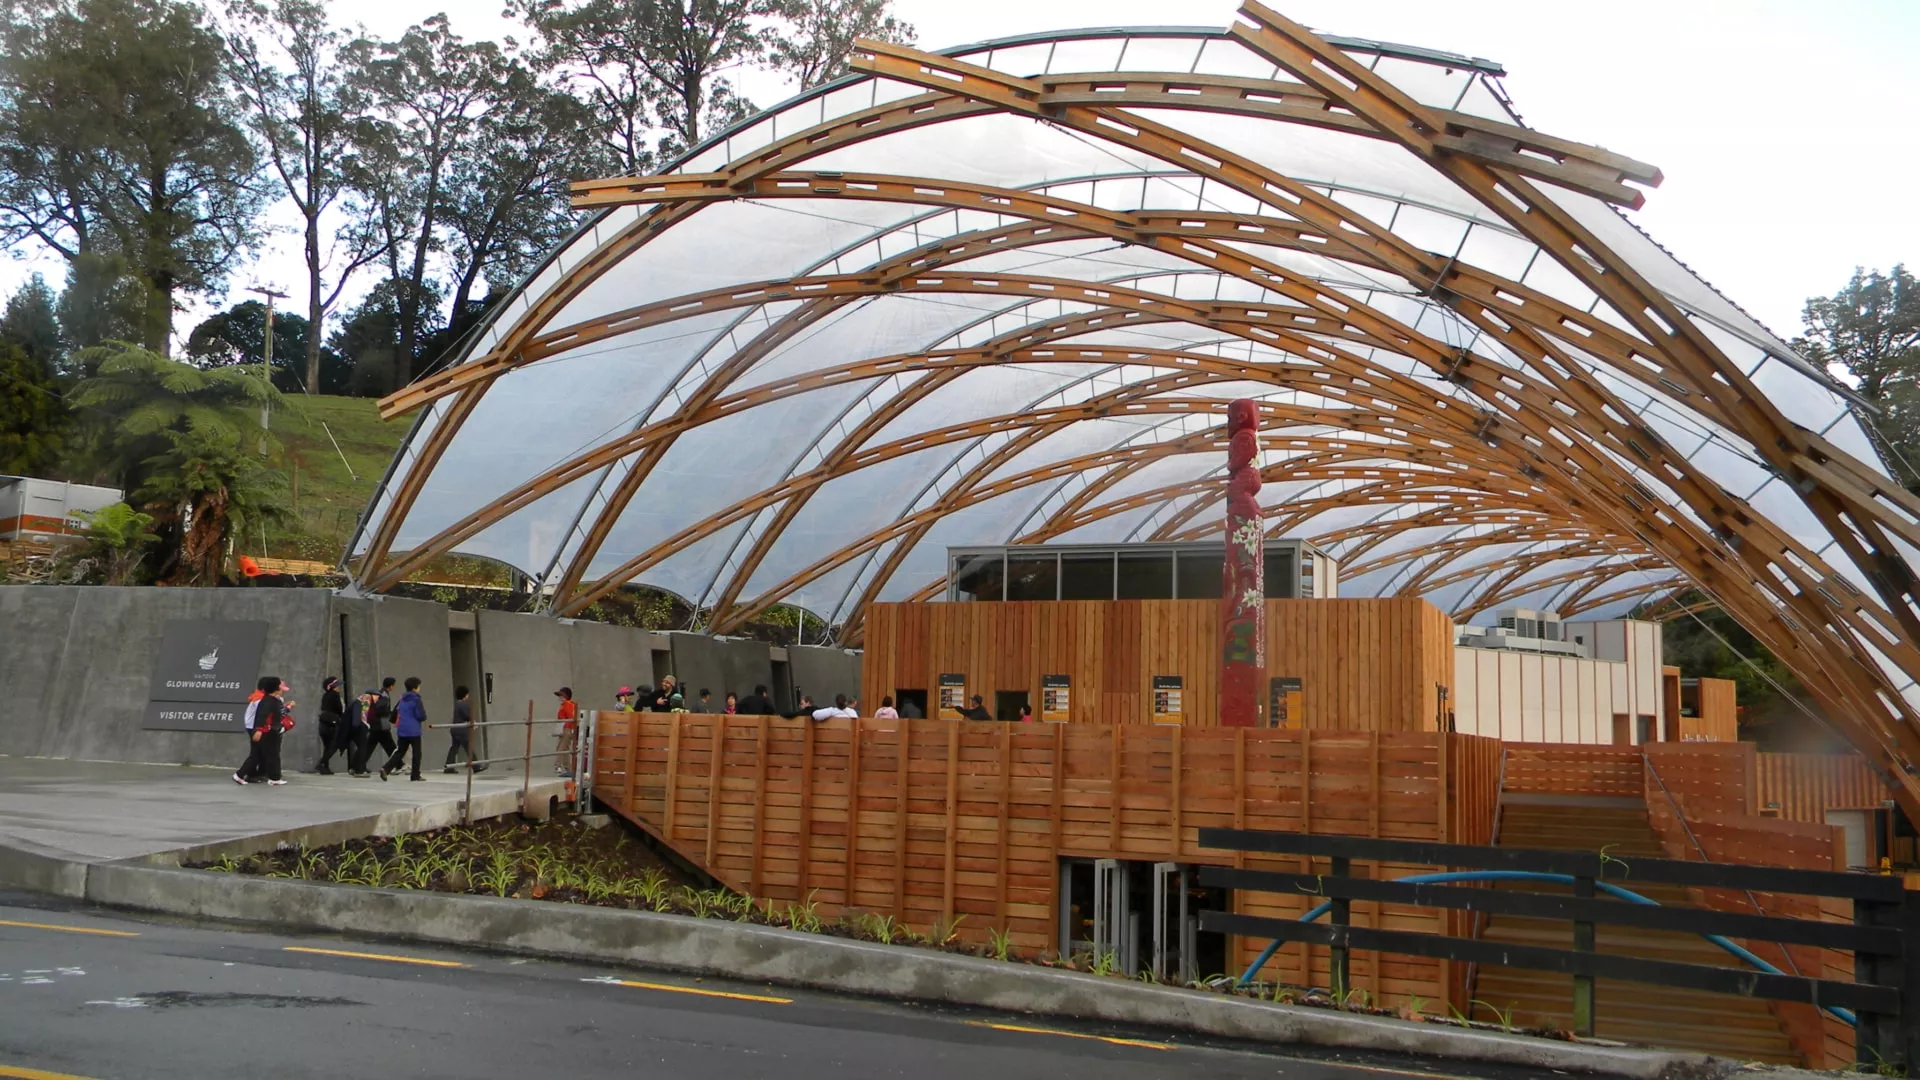 Das Design des Besucherzentrums der Waitomo Glowworm Caves war eine Gelegenheit zu zeigen, wie Technik, Umwelt und lokale Kultur in Harmonie miteinander verschmelzen.